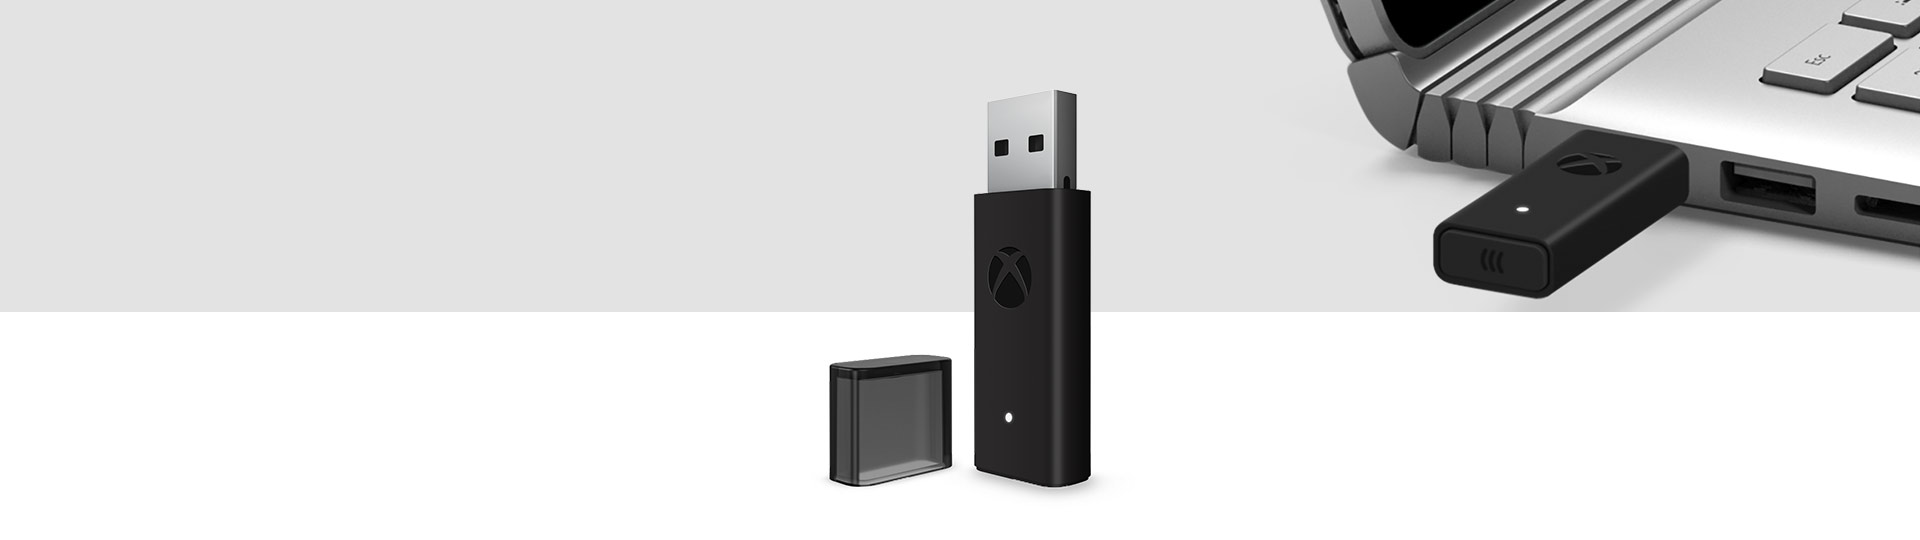 Windows 10 專用 Xbox 無線控制器轉接器與 Xbox 無線轉接器插入背景中手提電腦的 USB 連接埠